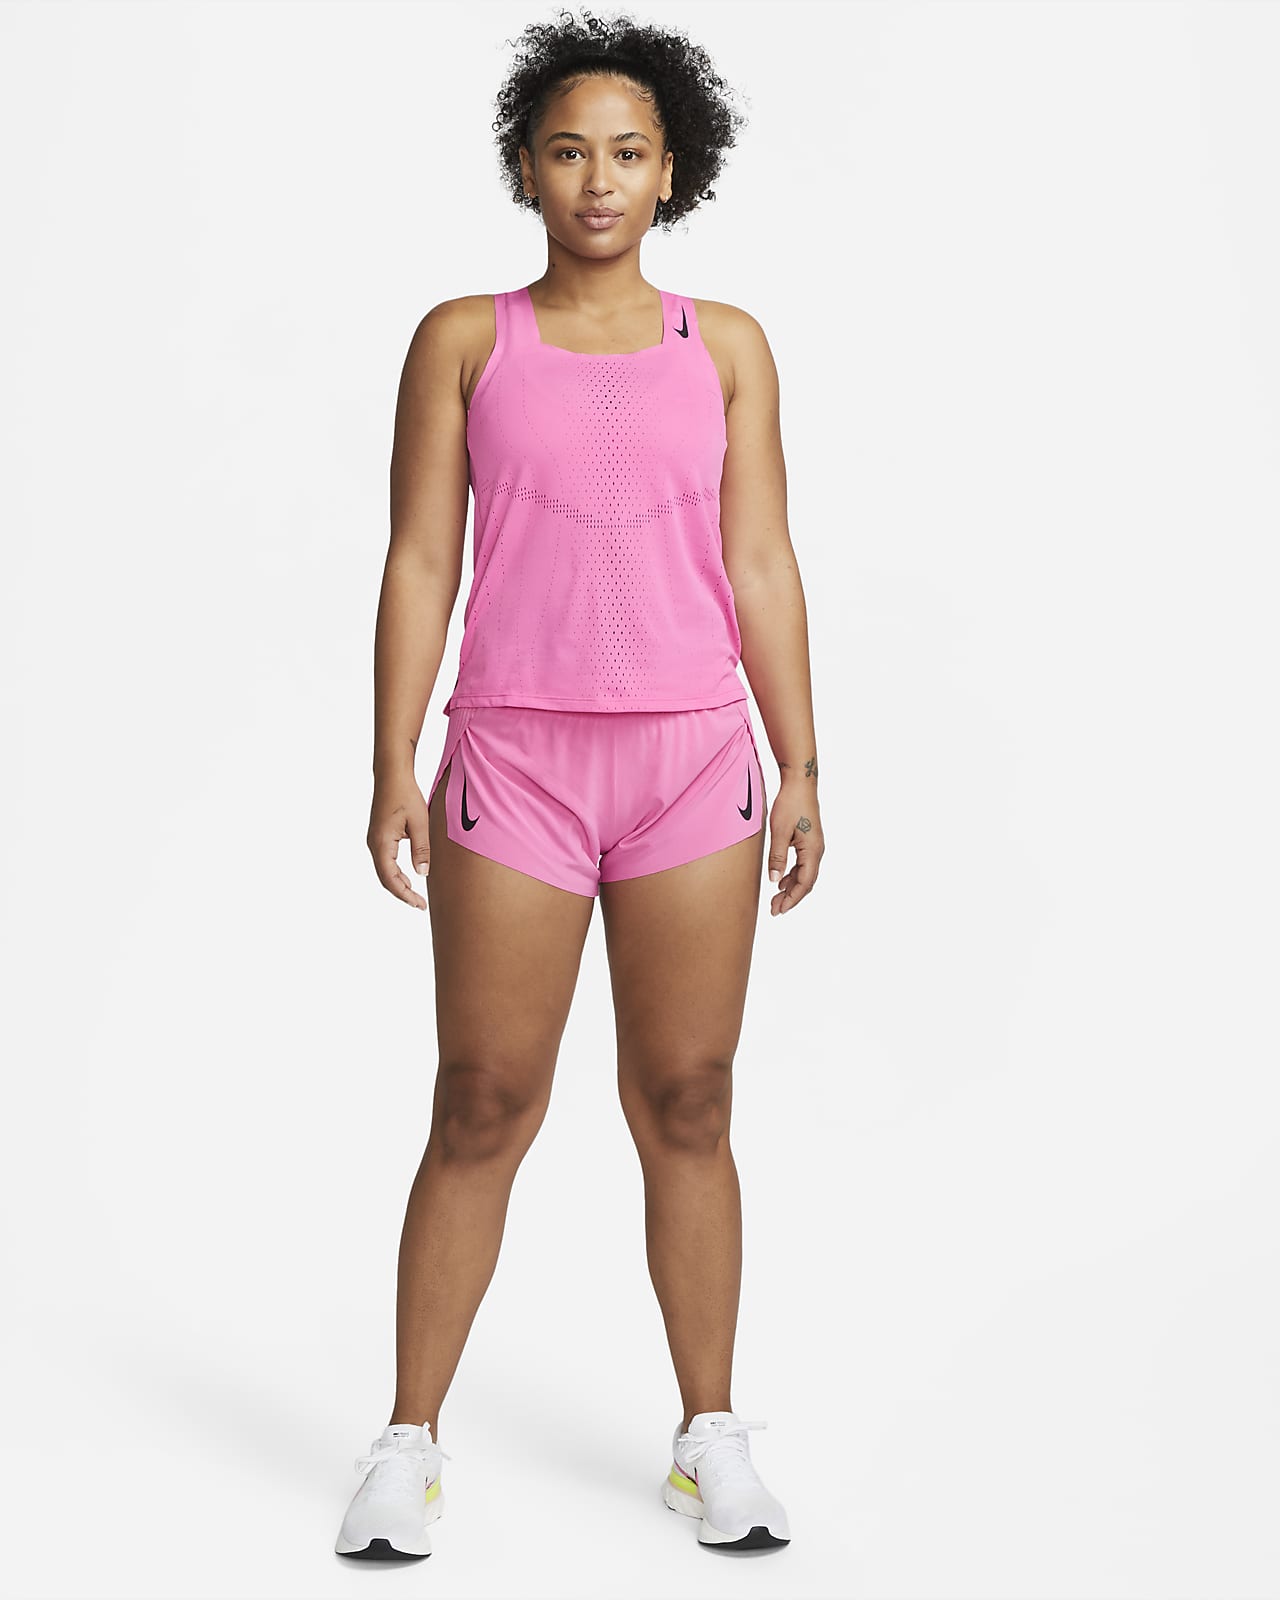 enjuague pasaporte Por encima de la cabeza y el hombro Camiseta sin mangas para carrera para mujer Nike Dri-FIT ADV AeroSwift. Nike .com